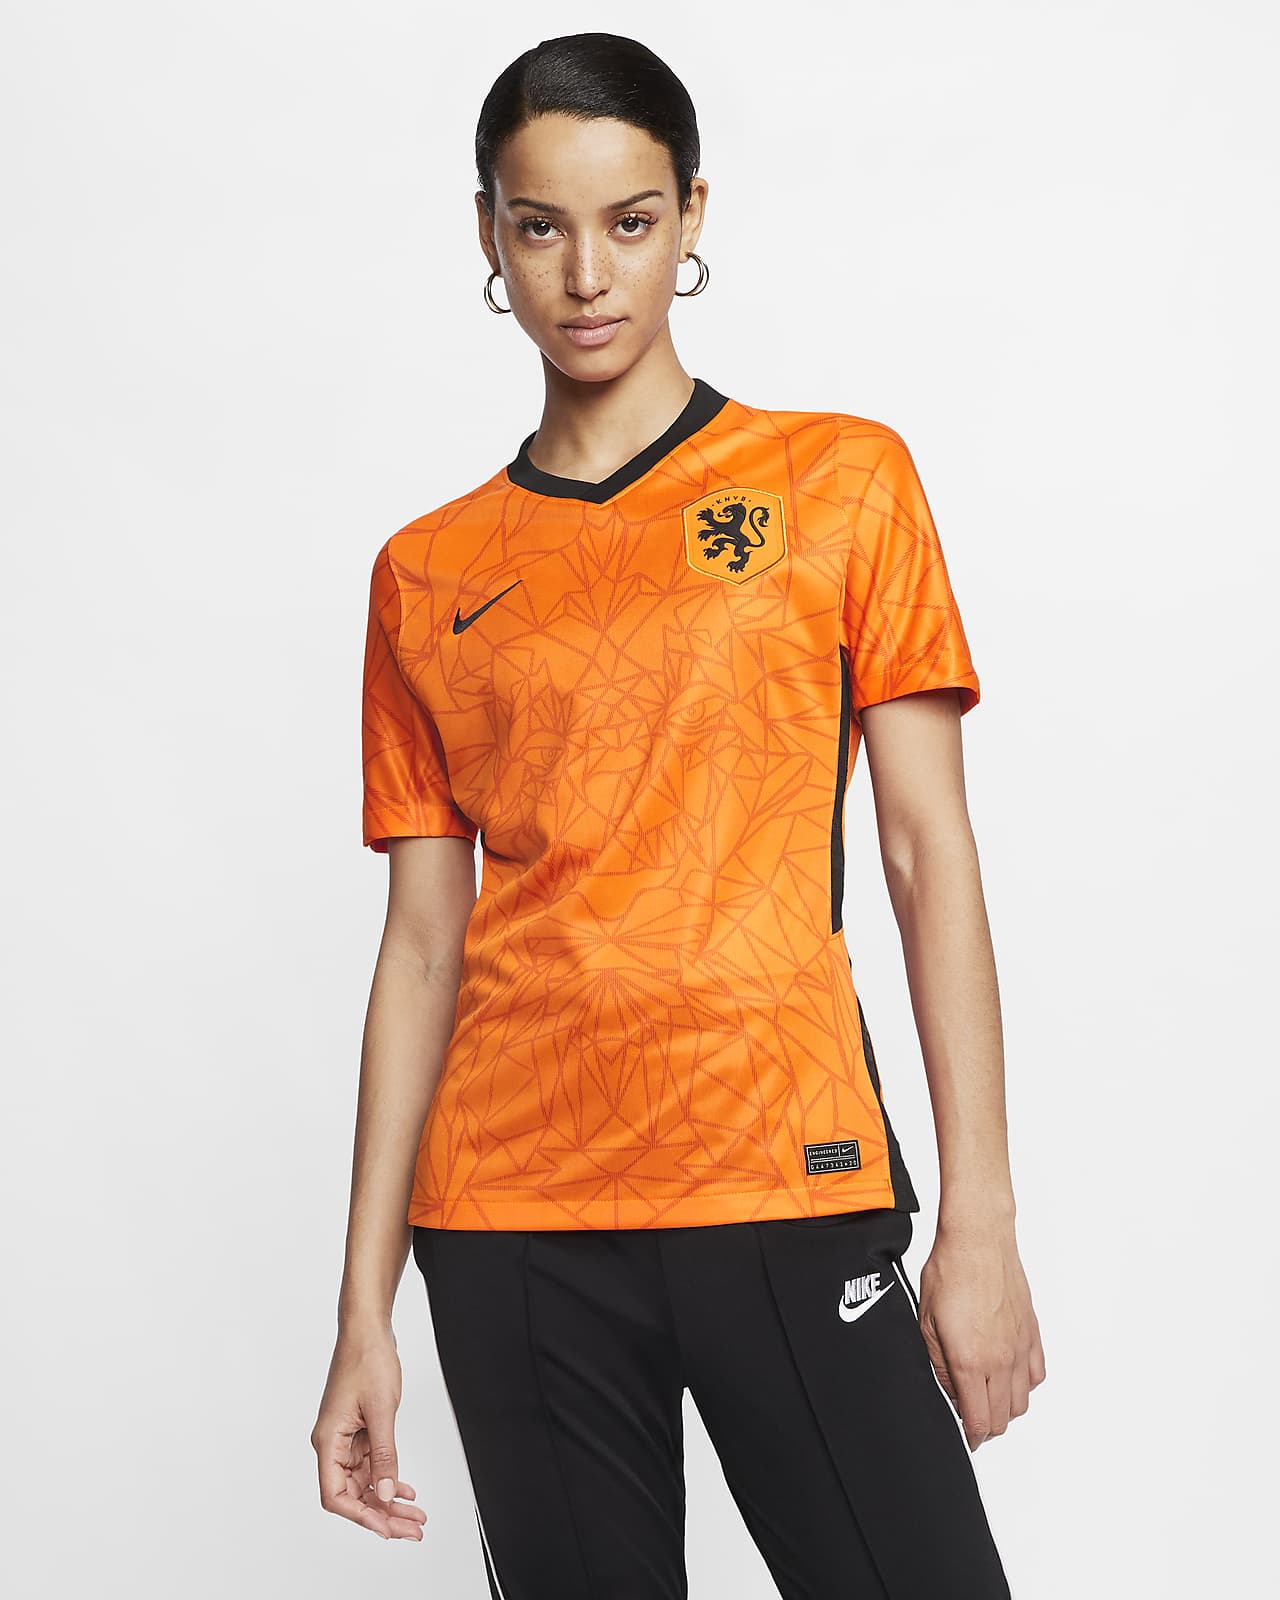 Filosofisch vrije tijd agitatie Nederland 2020 Stadium Thuis Voetbalshirt voor dames. Nike NL